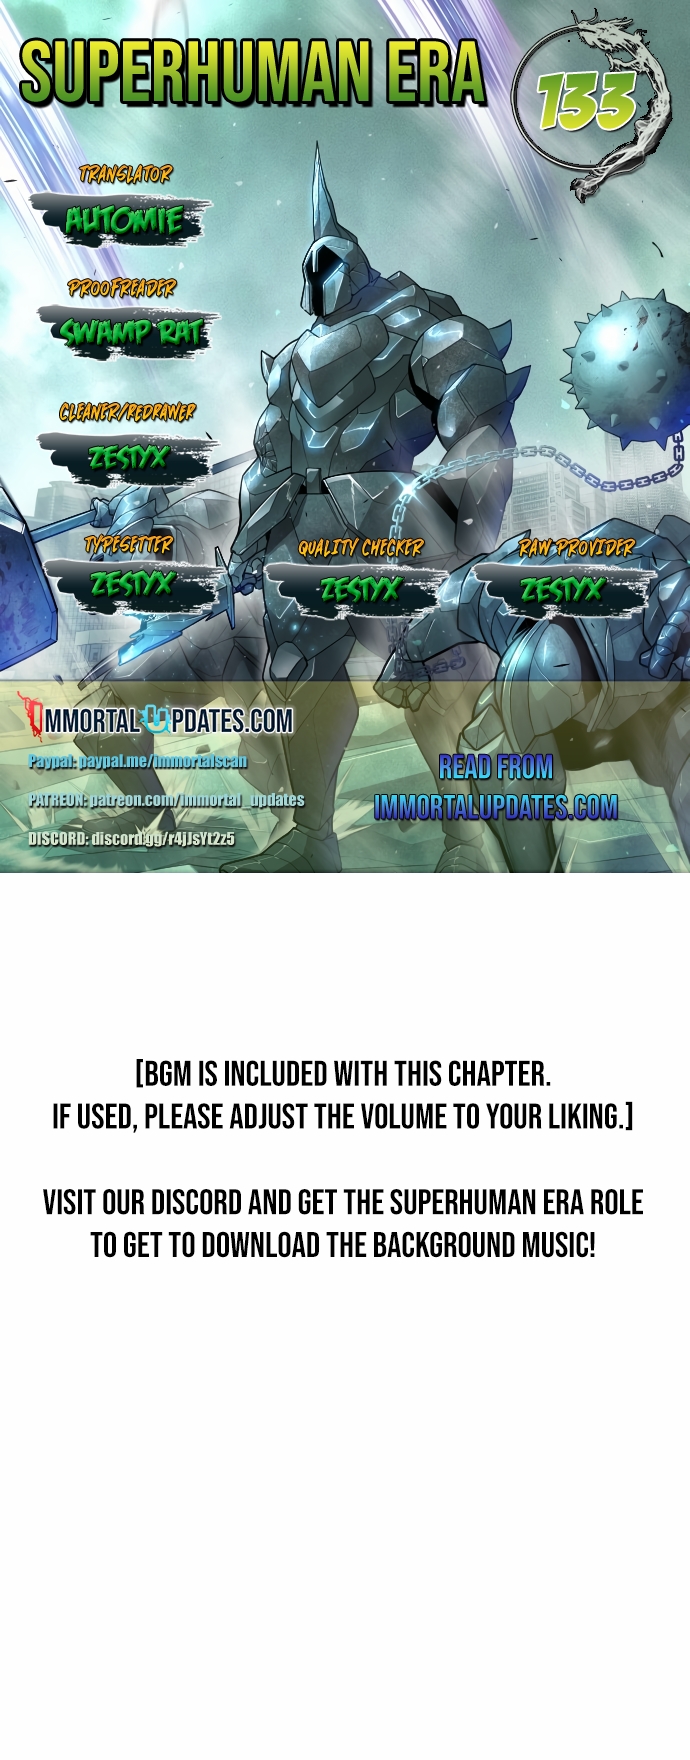 Superhuman Era - Chapter 30673 - Image 1